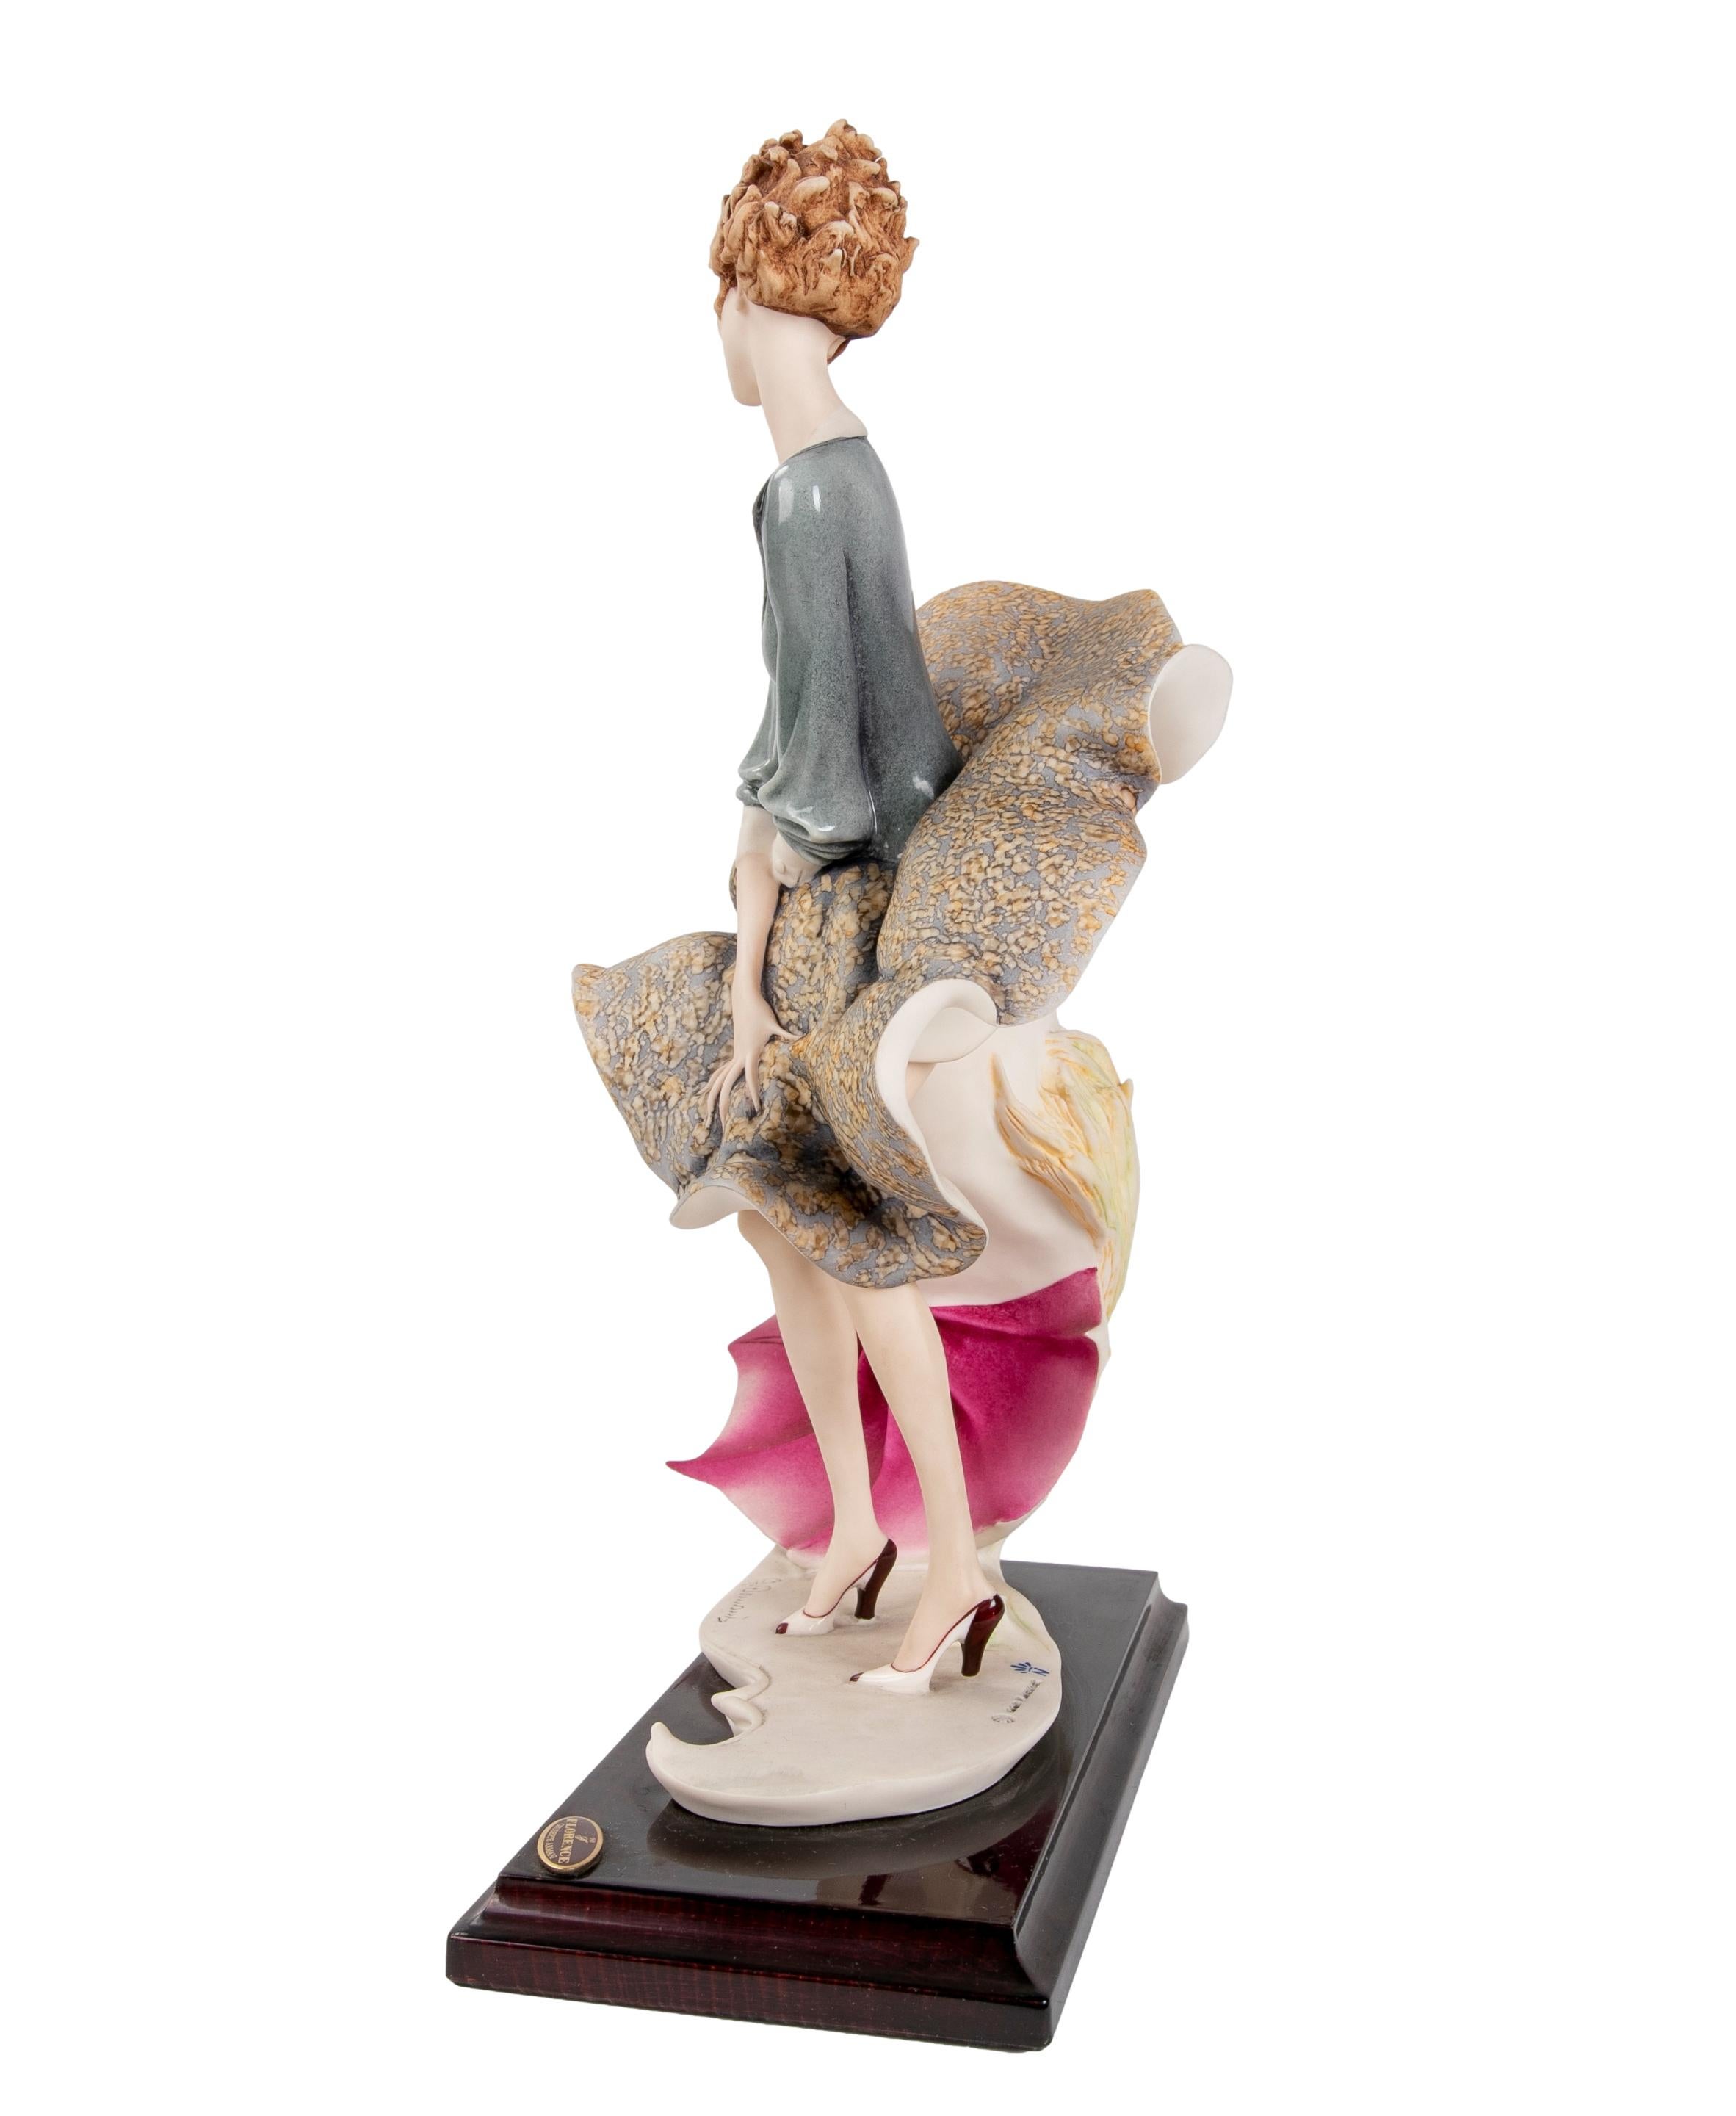 Giuseppe Armani Figurines - 4 For Sale on 1stDibs | where can i sell my giuseppe  armani figurines, giuseppe armani figurines for sale, g armani statues